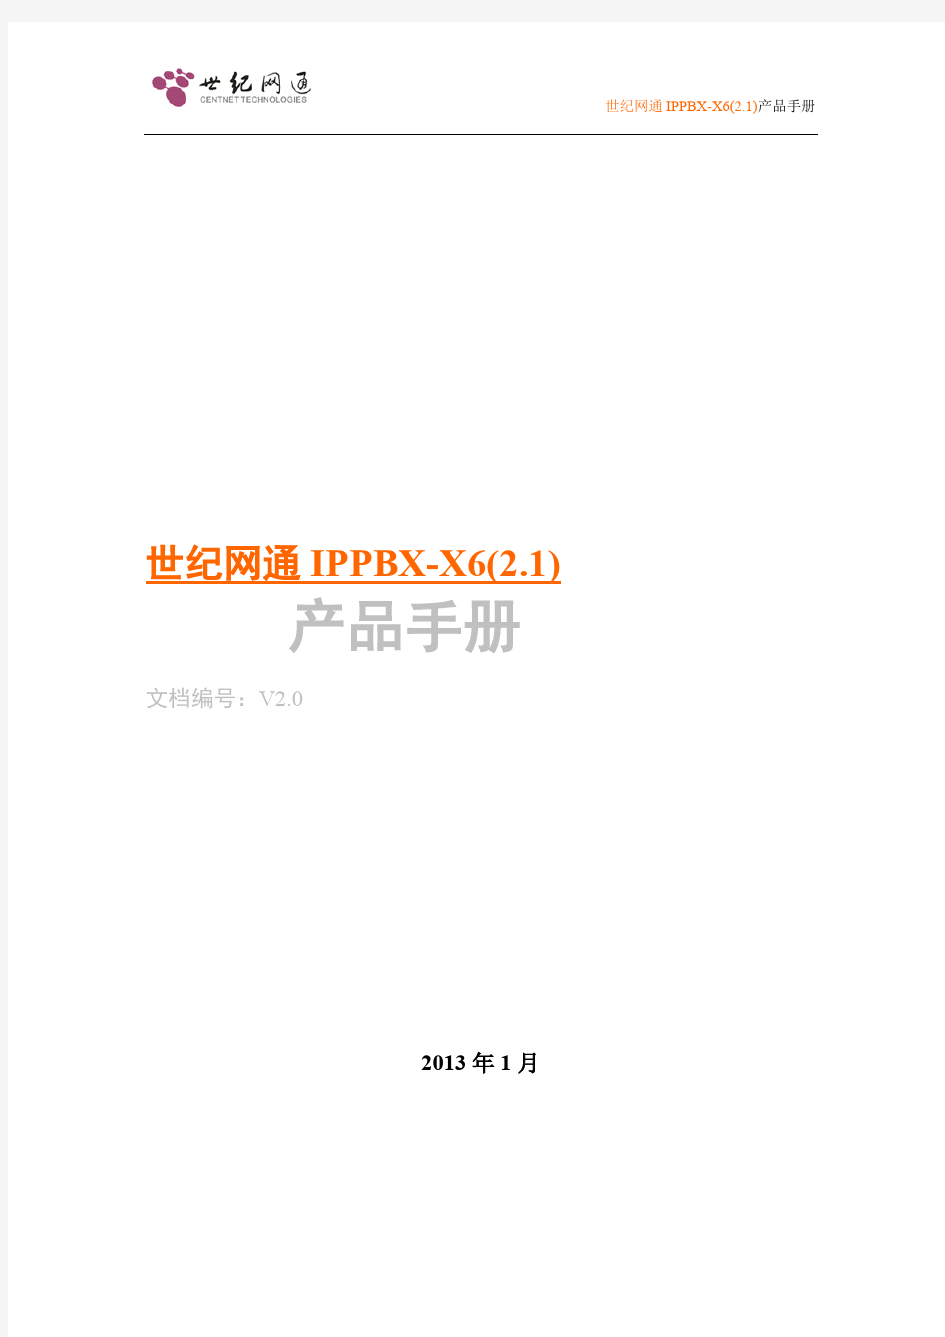 世纪网通IPPBX-X6(2.1)产品手册(V2.0)